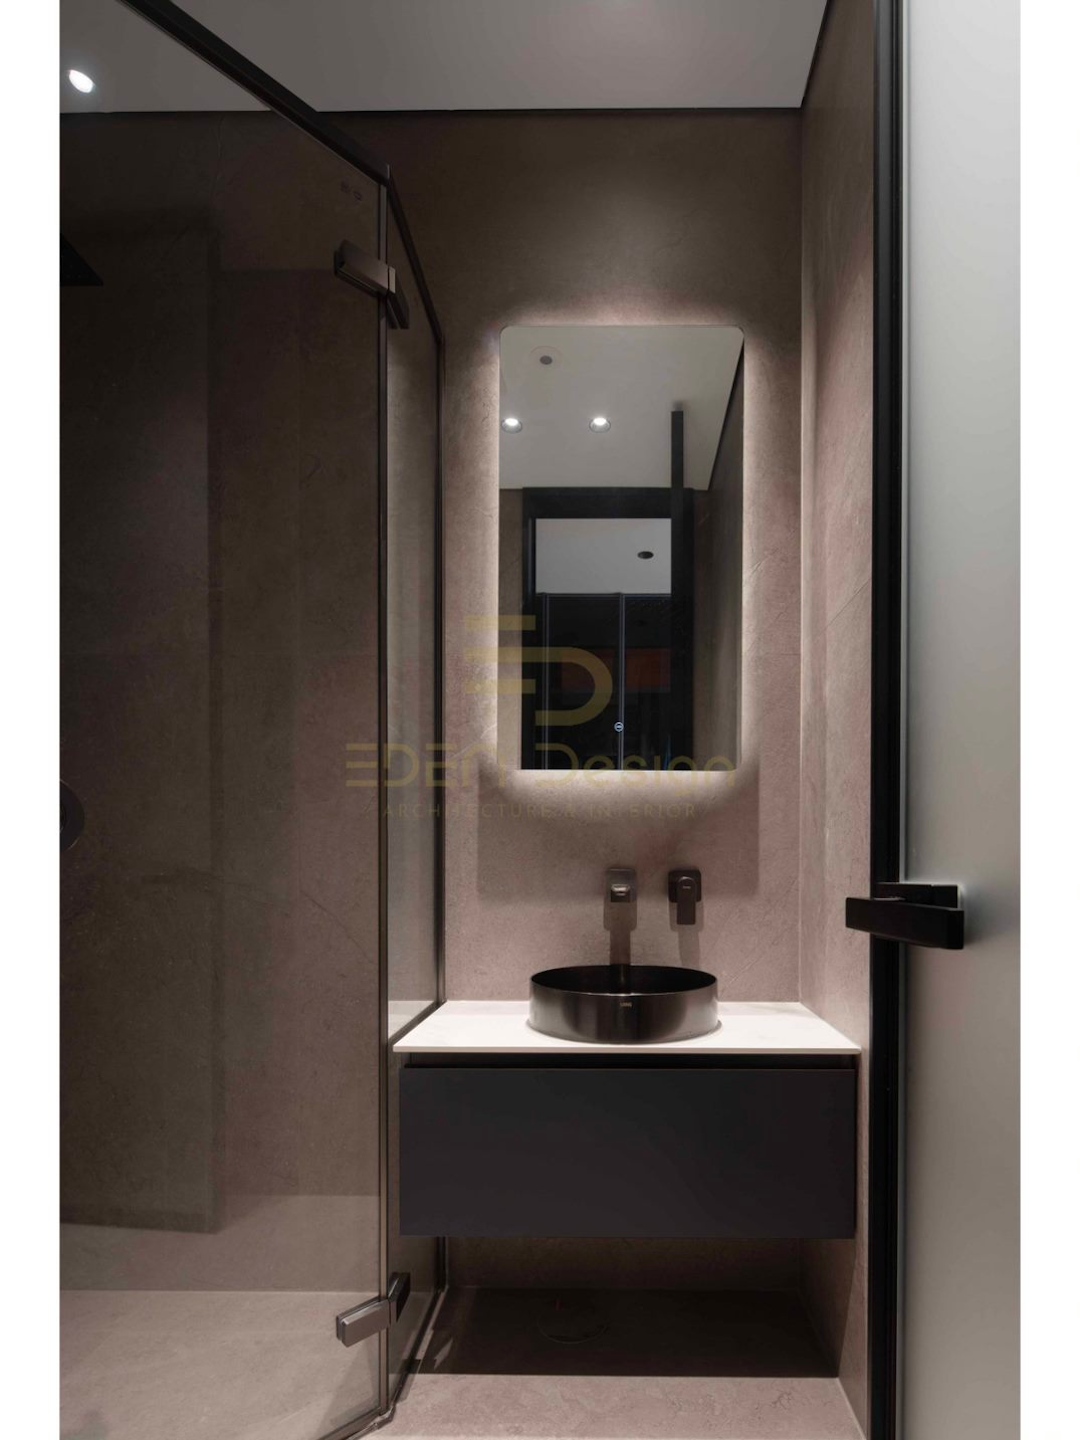 Gương nhà tắm tích hợp đèn led mang tính thẩm mỹ cao cho căn phòng